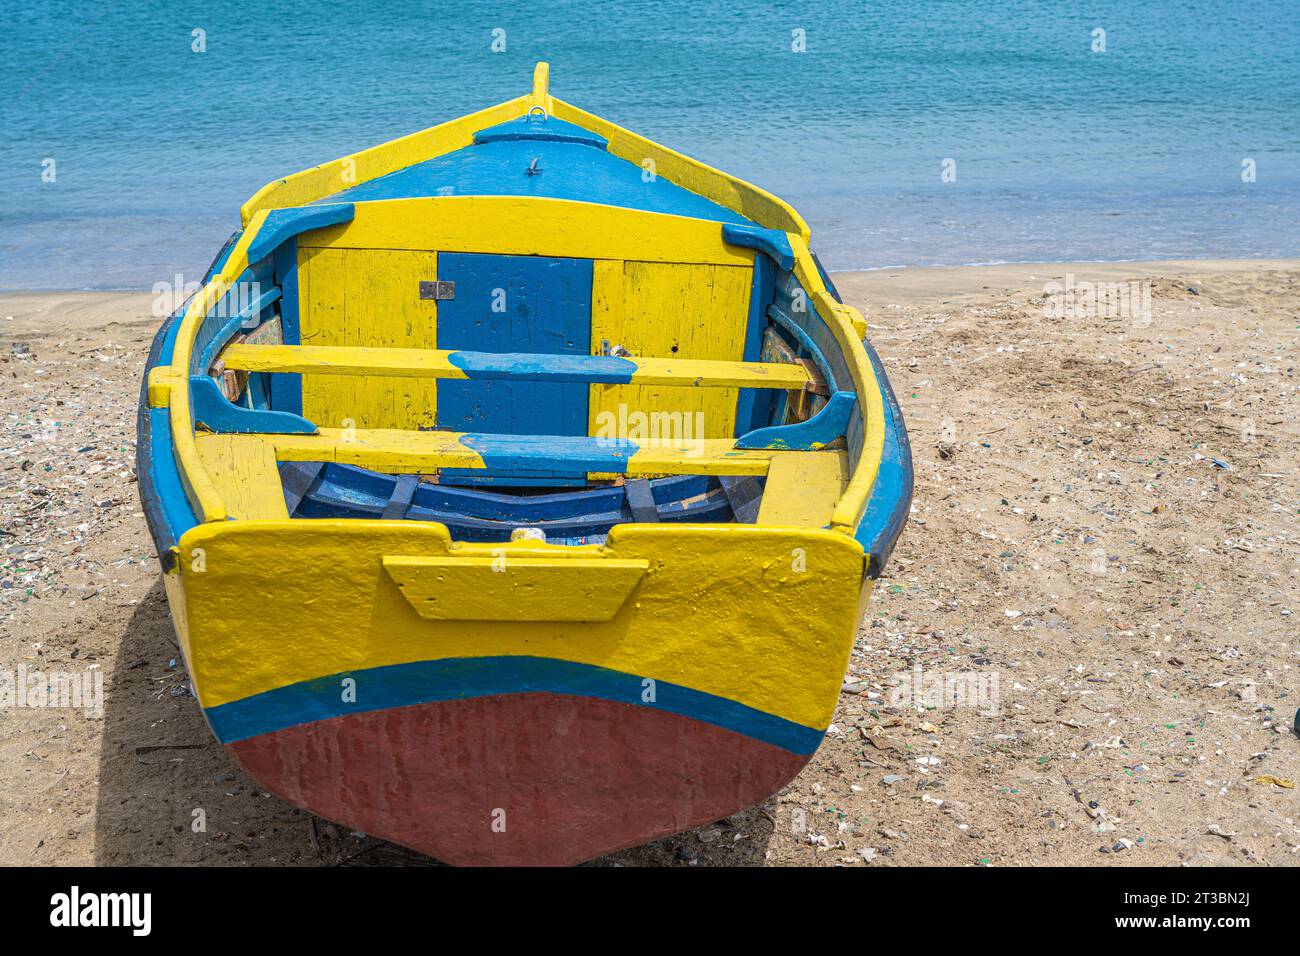 Une photographie de barque peinte de couleurs vives sur une plage du Cap-Vert Banque D'Images